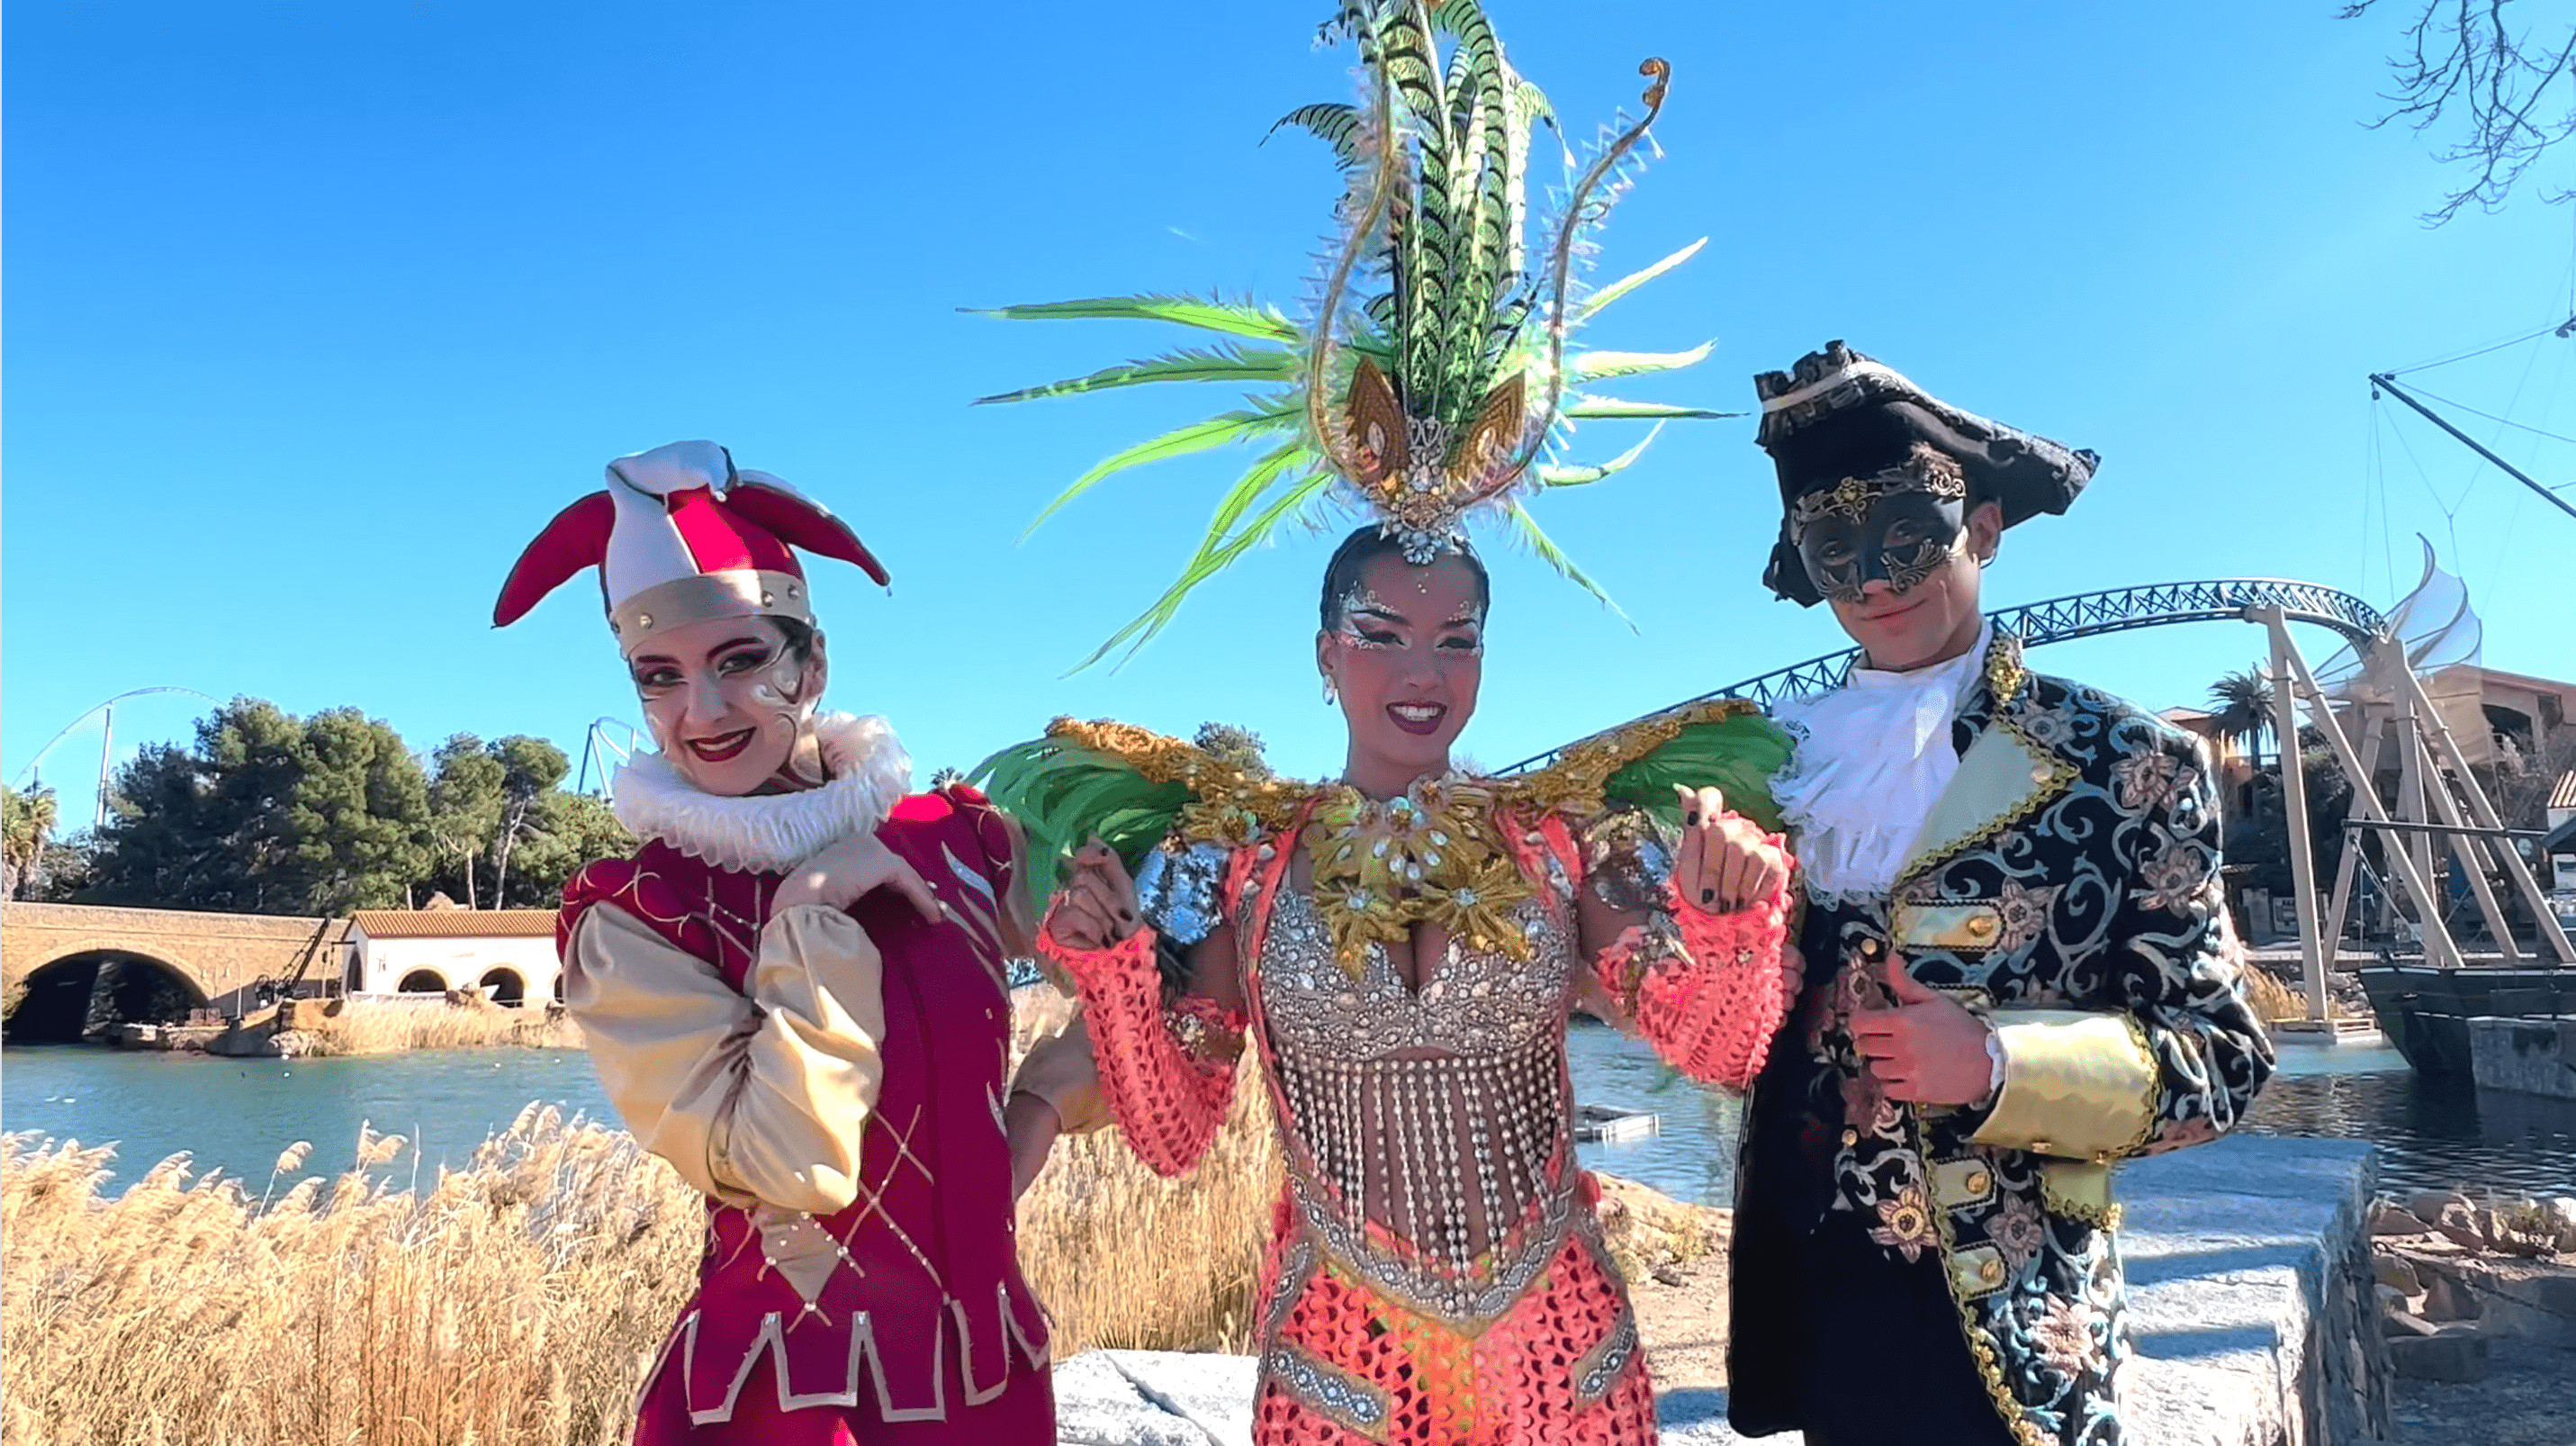 Fotografía promocional de la nueva temporada de Carnaval de Port Aventura / PORT AVENTURA